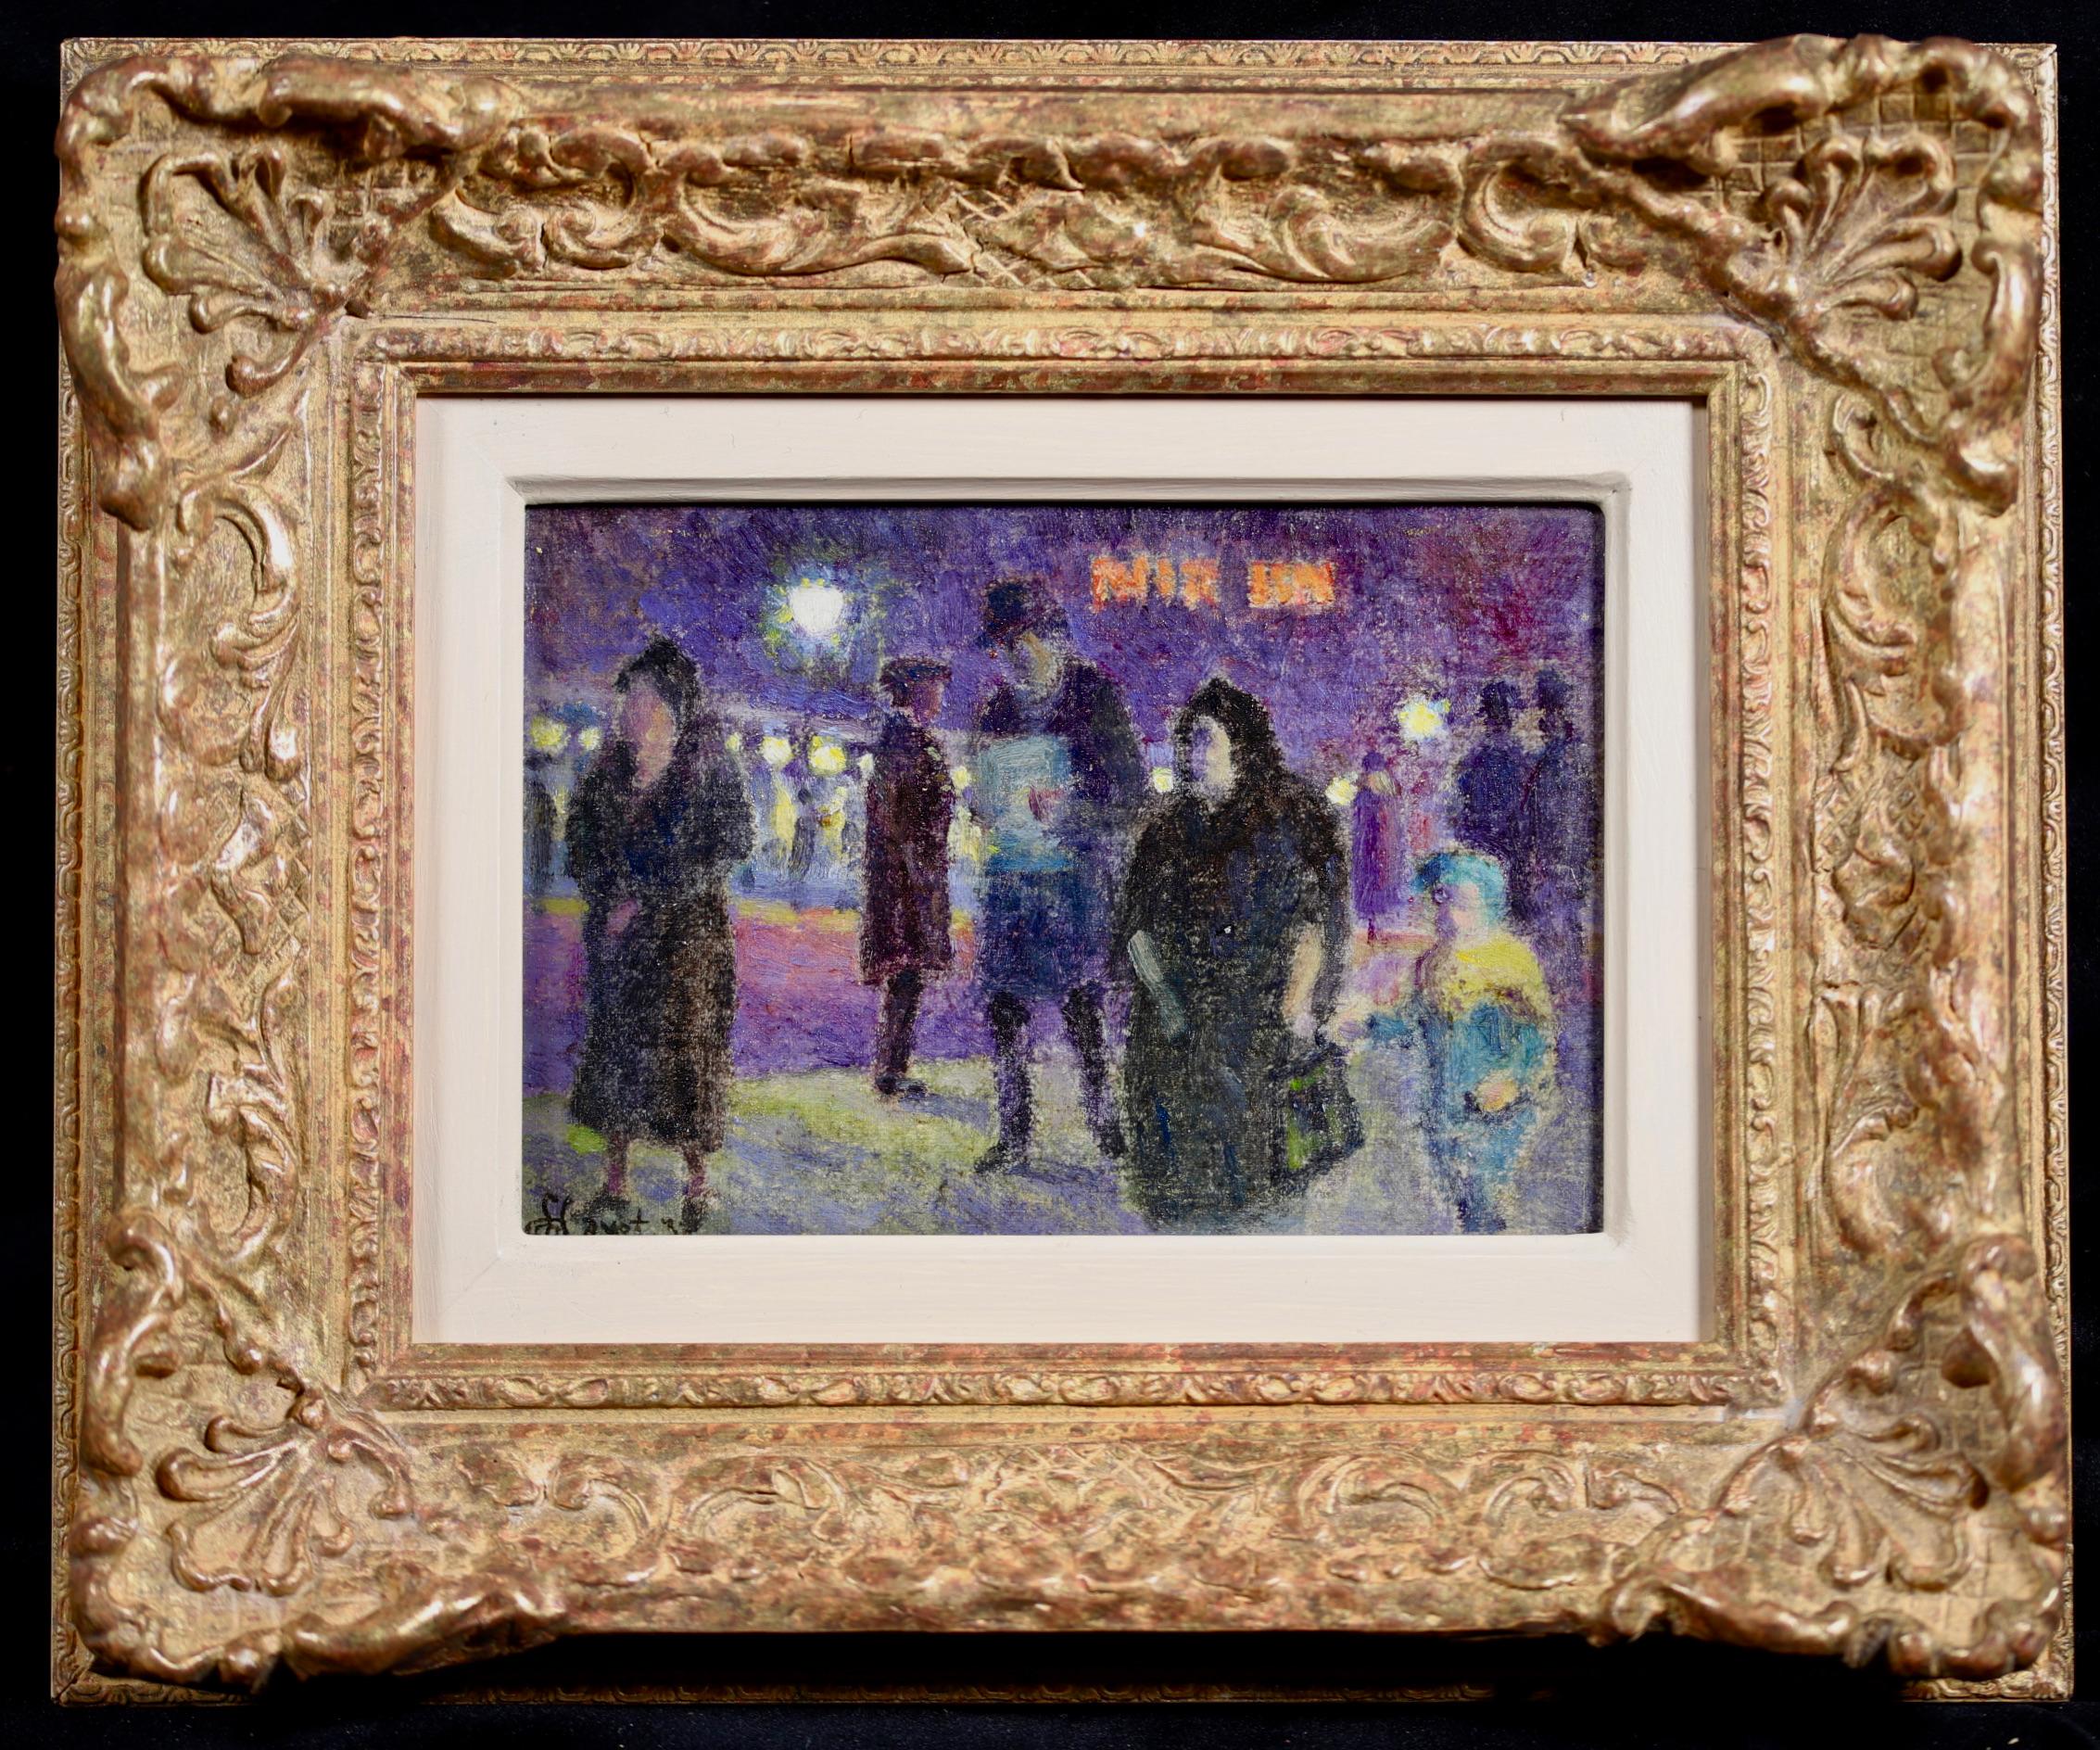 Une magnifique huile sur toile de Louis Hayet représentant des personnages dans un paysage urbain à l'heure du soir. Signé et daté 1932 en bas à gauche. 

Louis Hayet a eu une enfance difficile et itinérante, en raison de l'instabilité de son père,